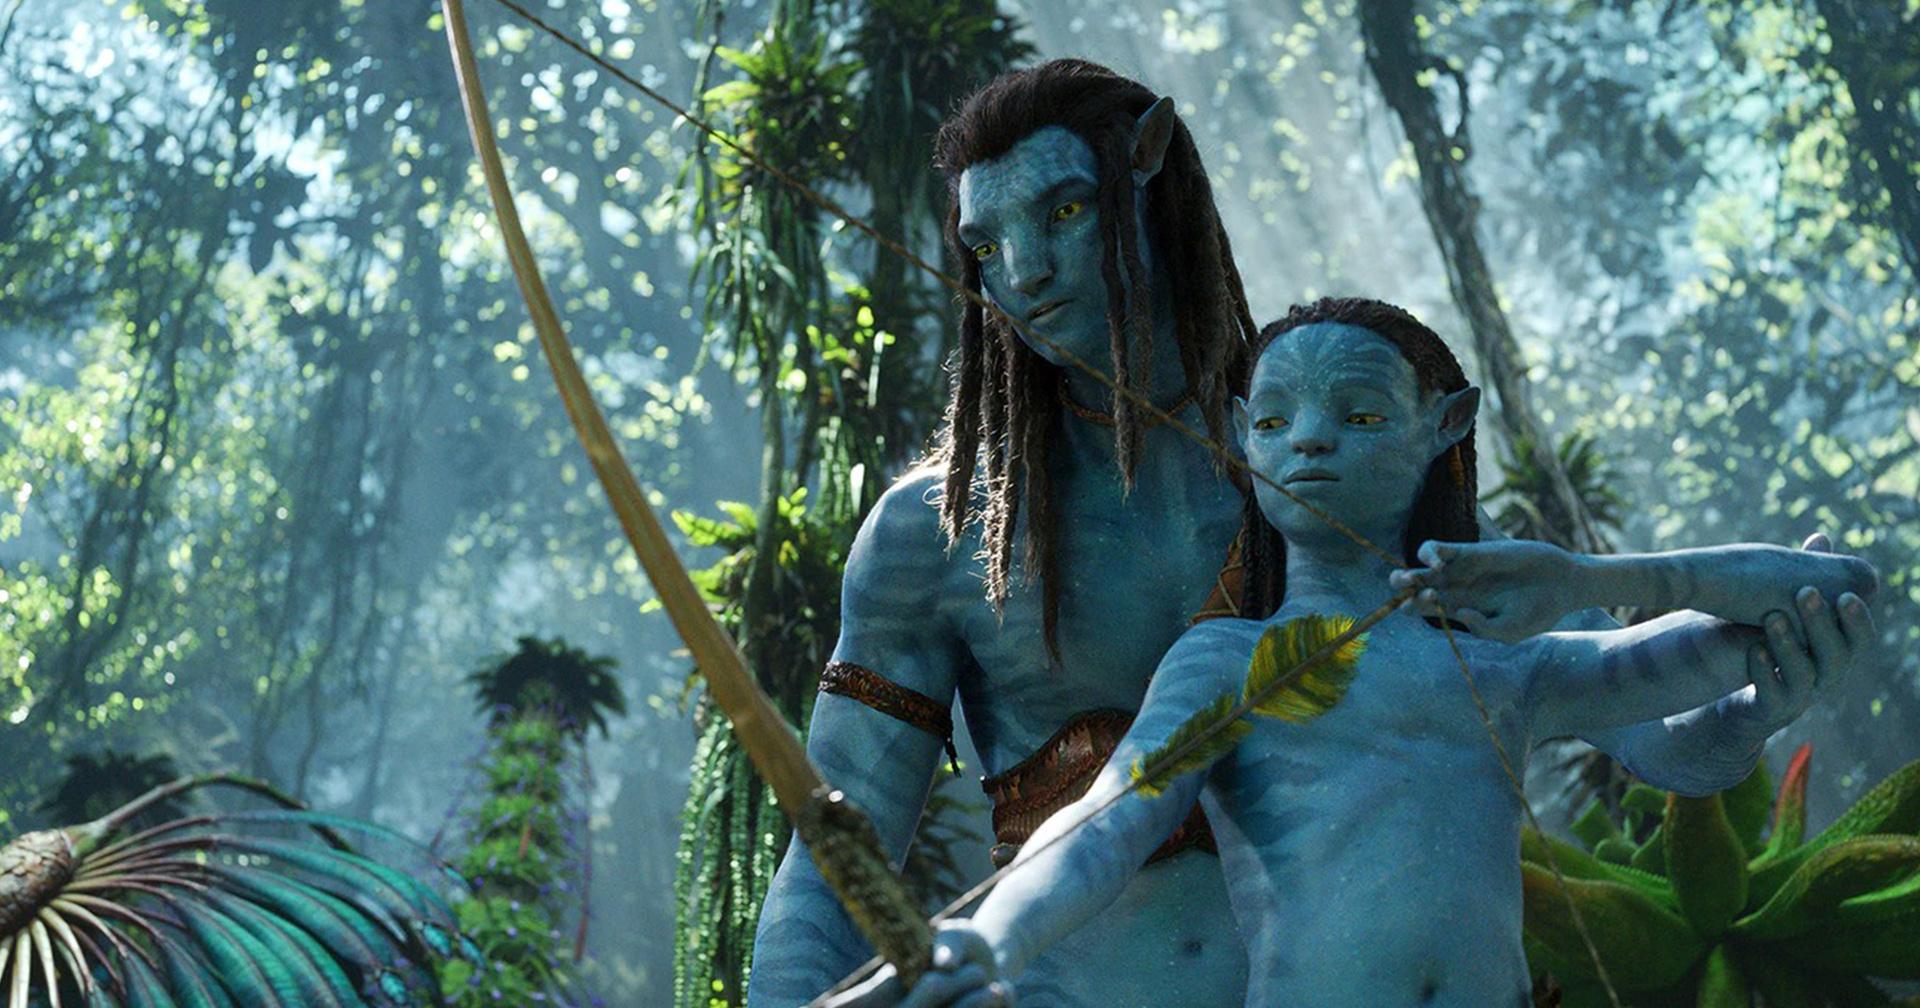 หนัง ‘Avatar: The Way of Water’ ยังไม่เสร็จ แม้มีกำหนดฉายเดือนธันวาคมที่จะถึงนี้